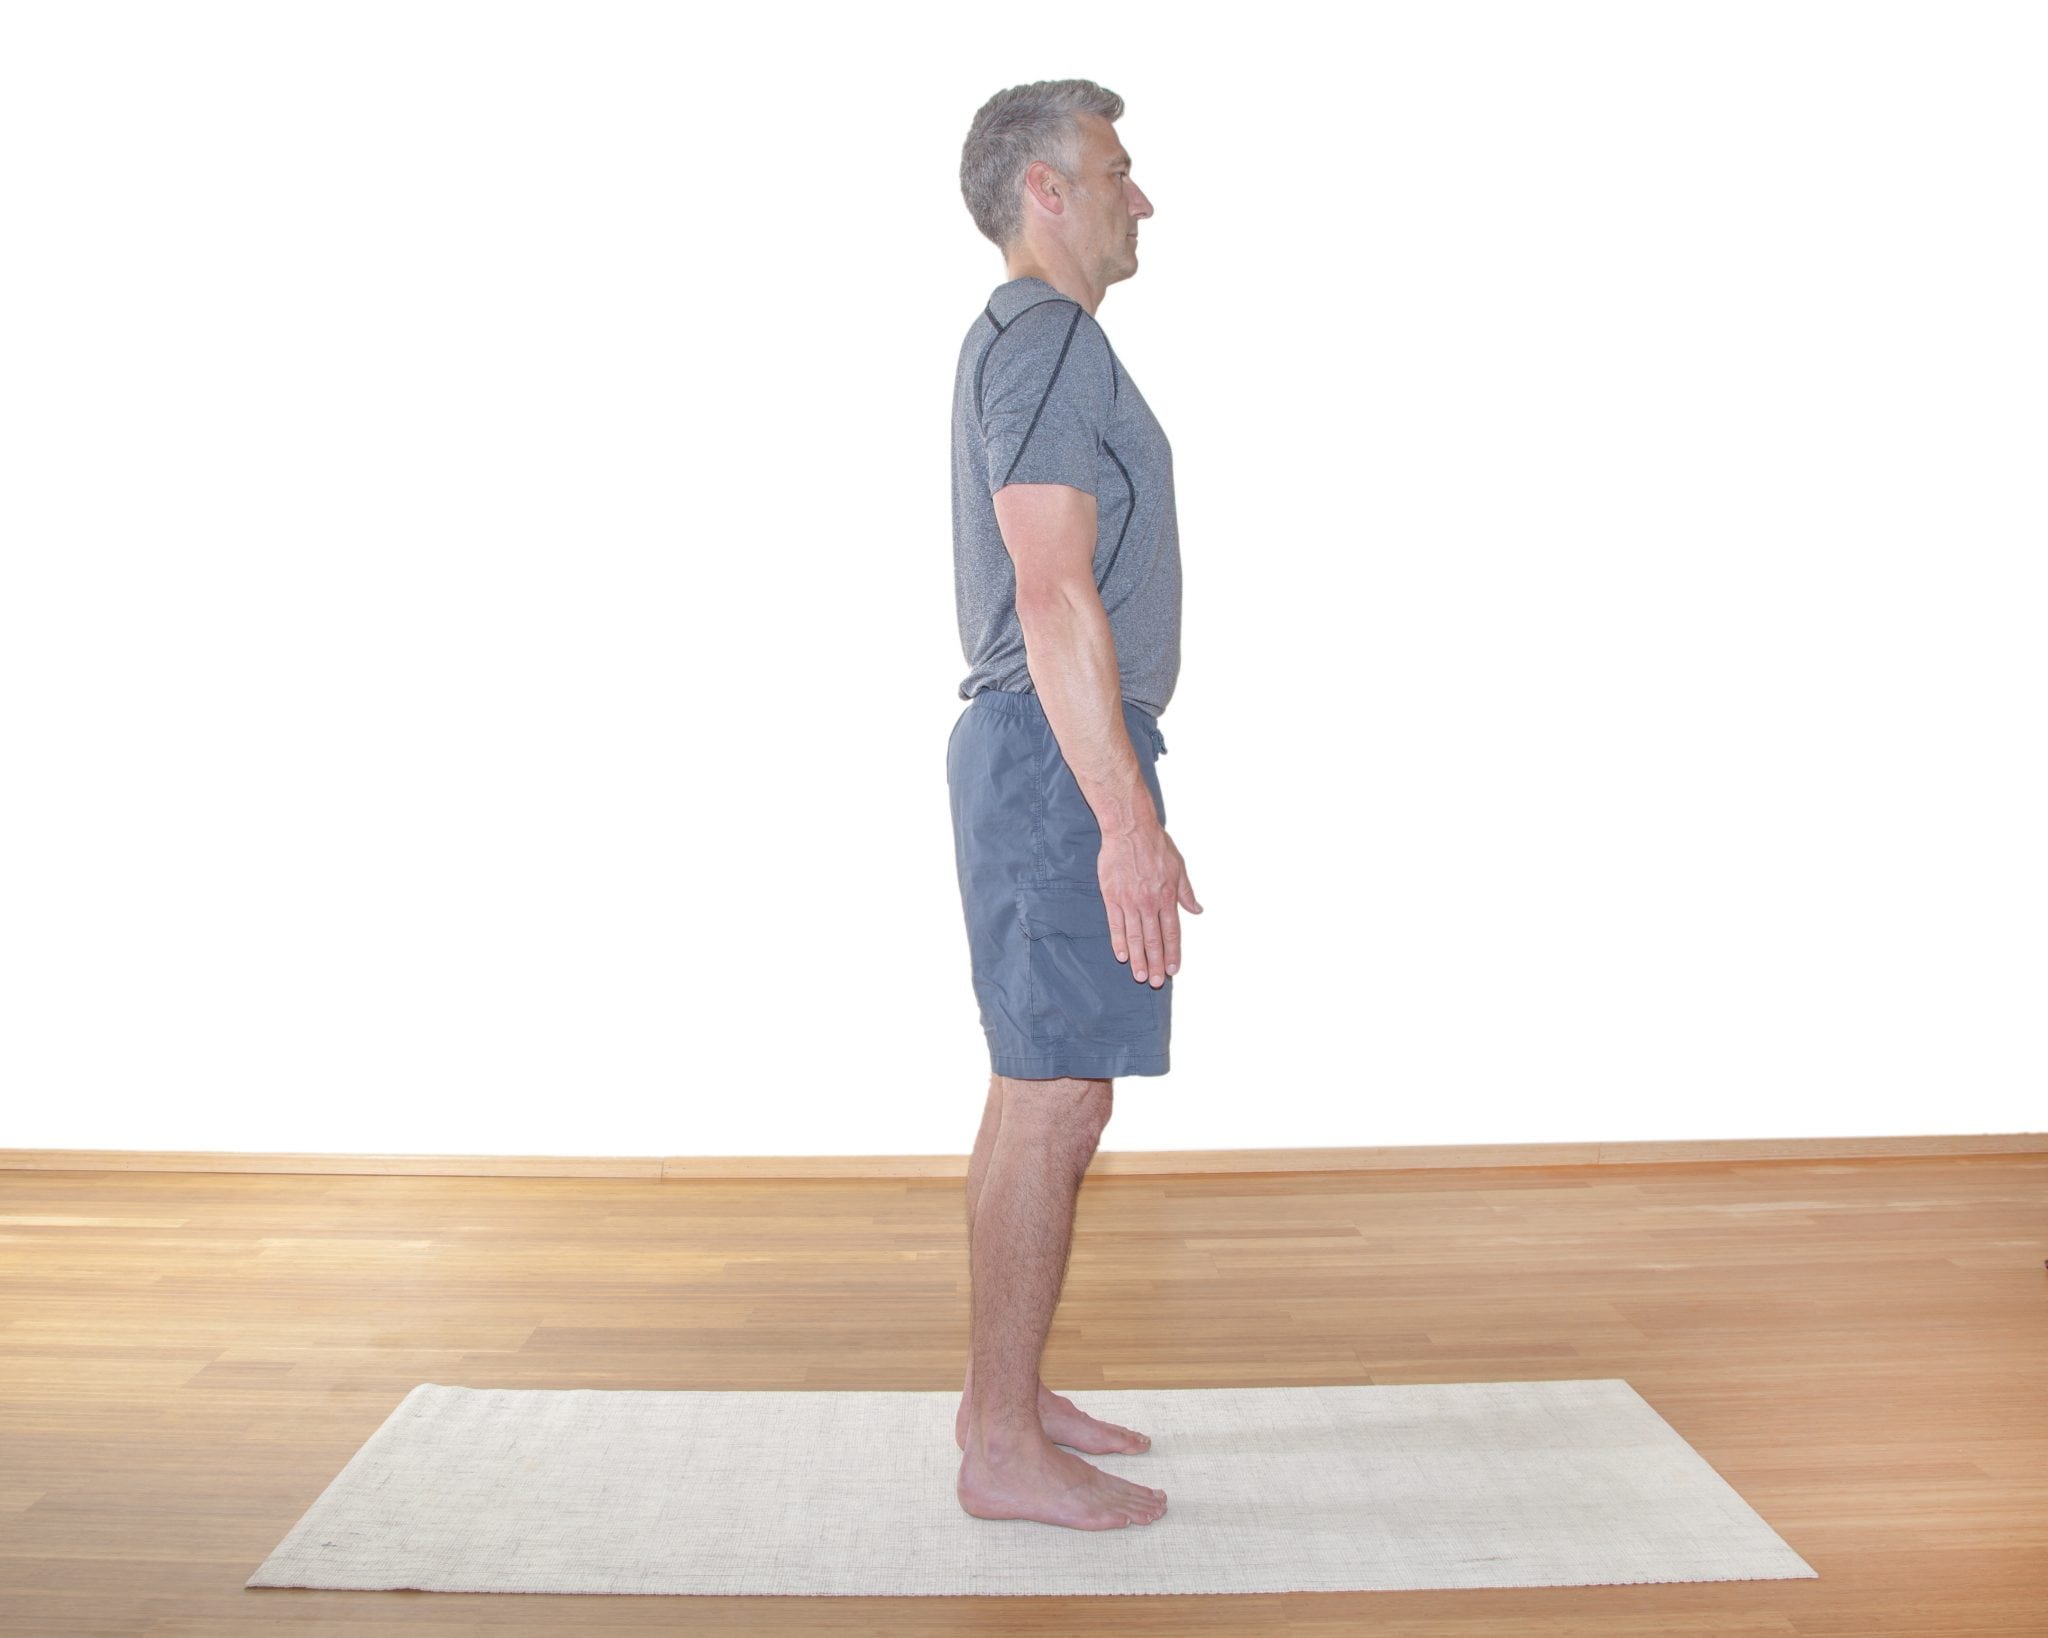 How to Do Mountain Pose - YogaUOnline